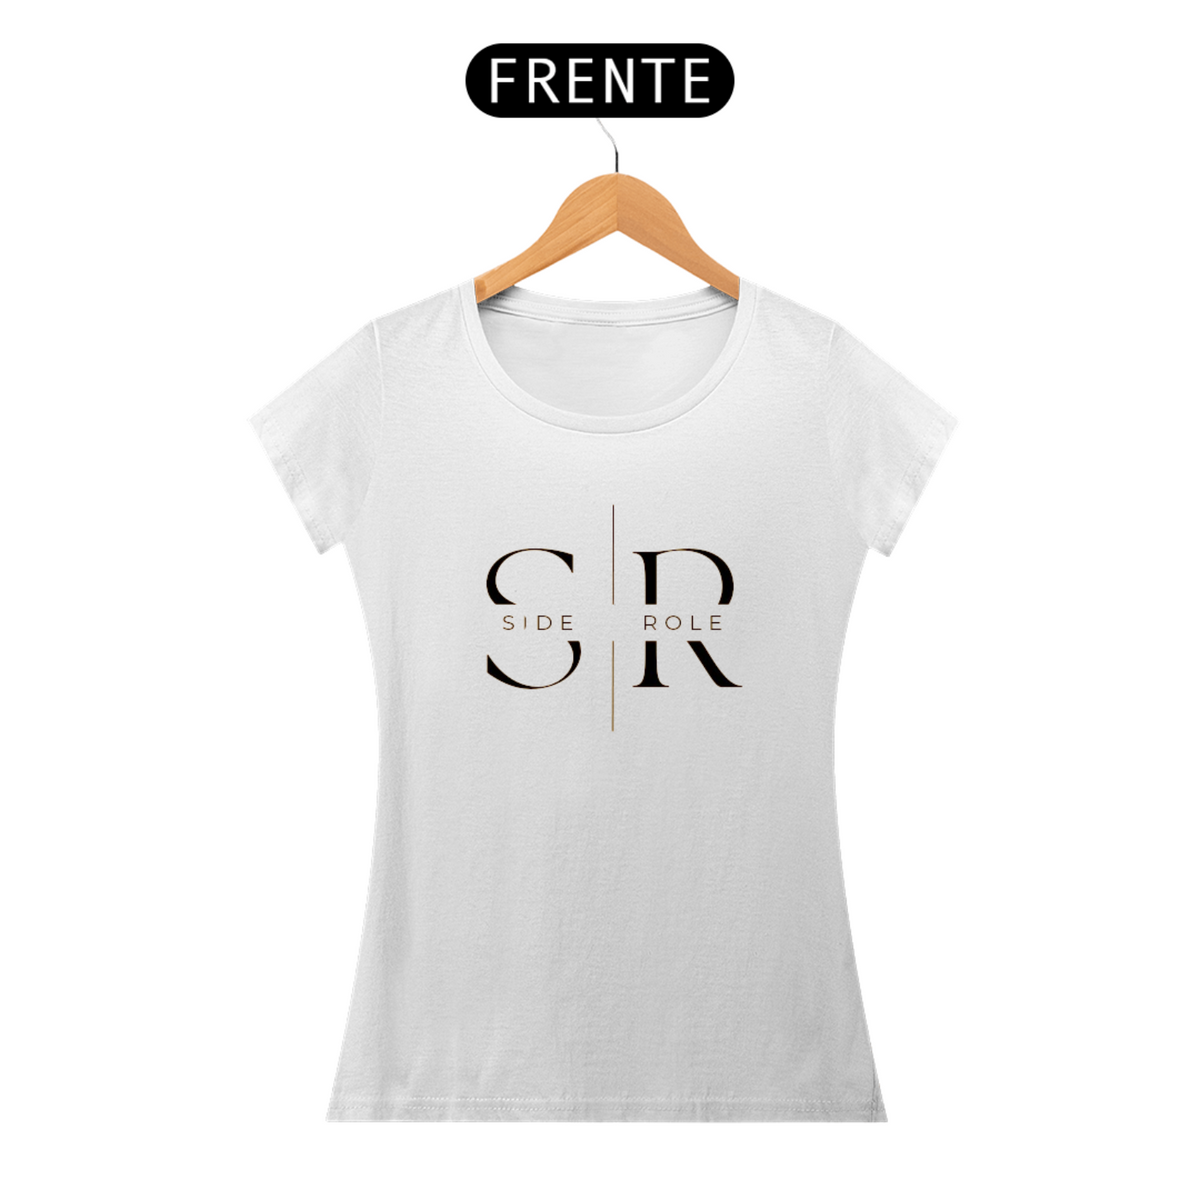 Nome do produto: Camiseta Side Role Branca Feminina